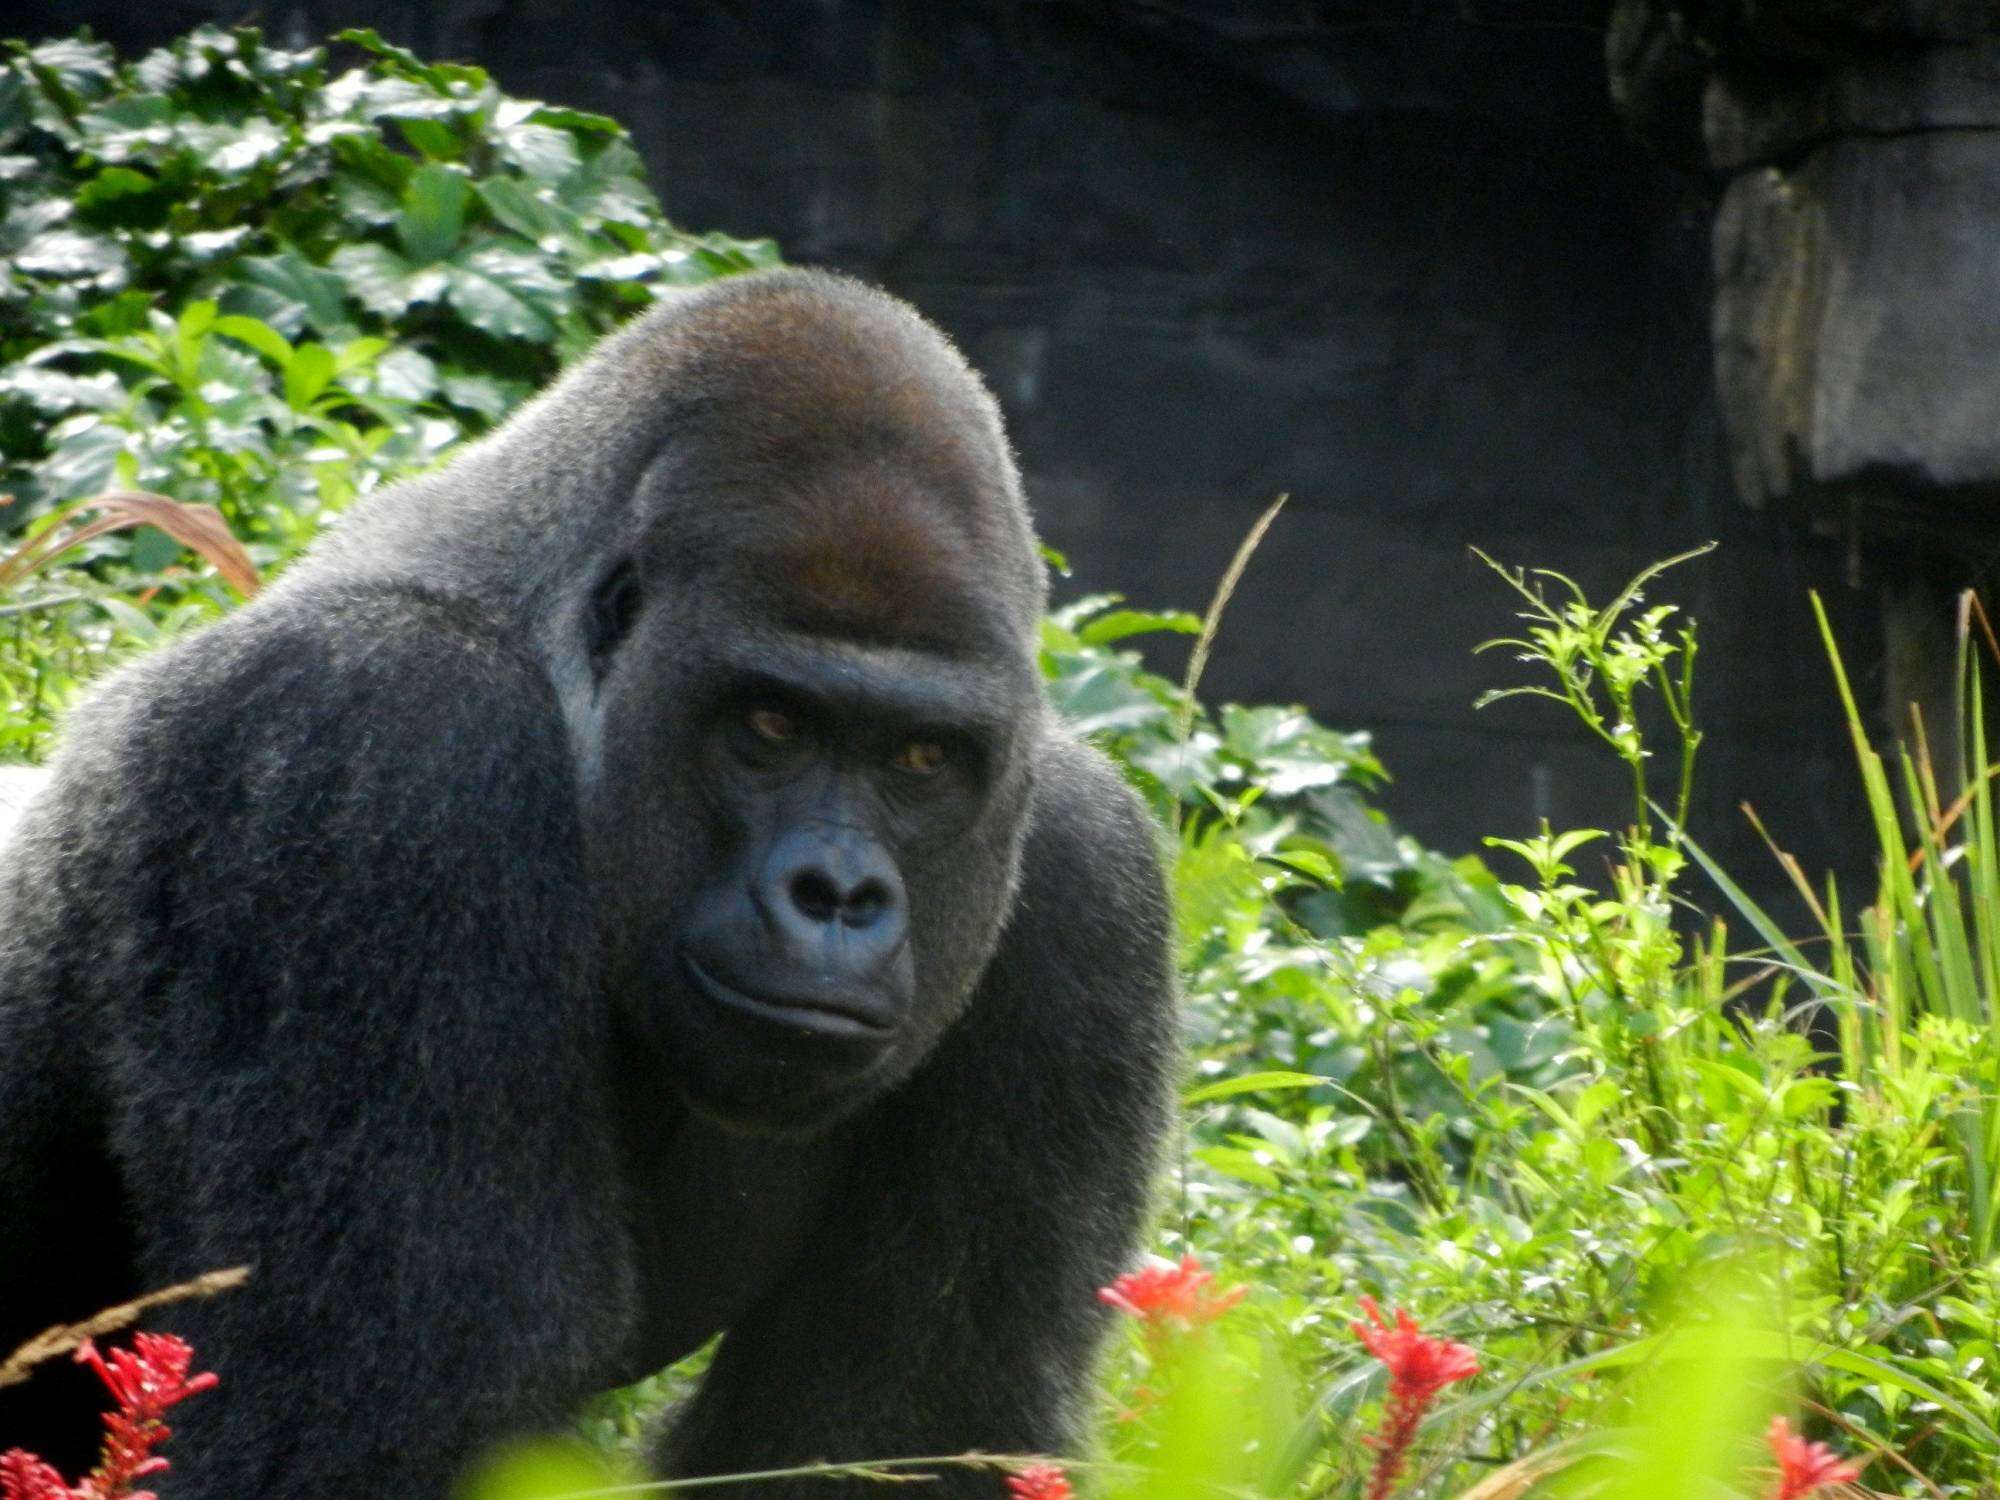 Gorilla stare down